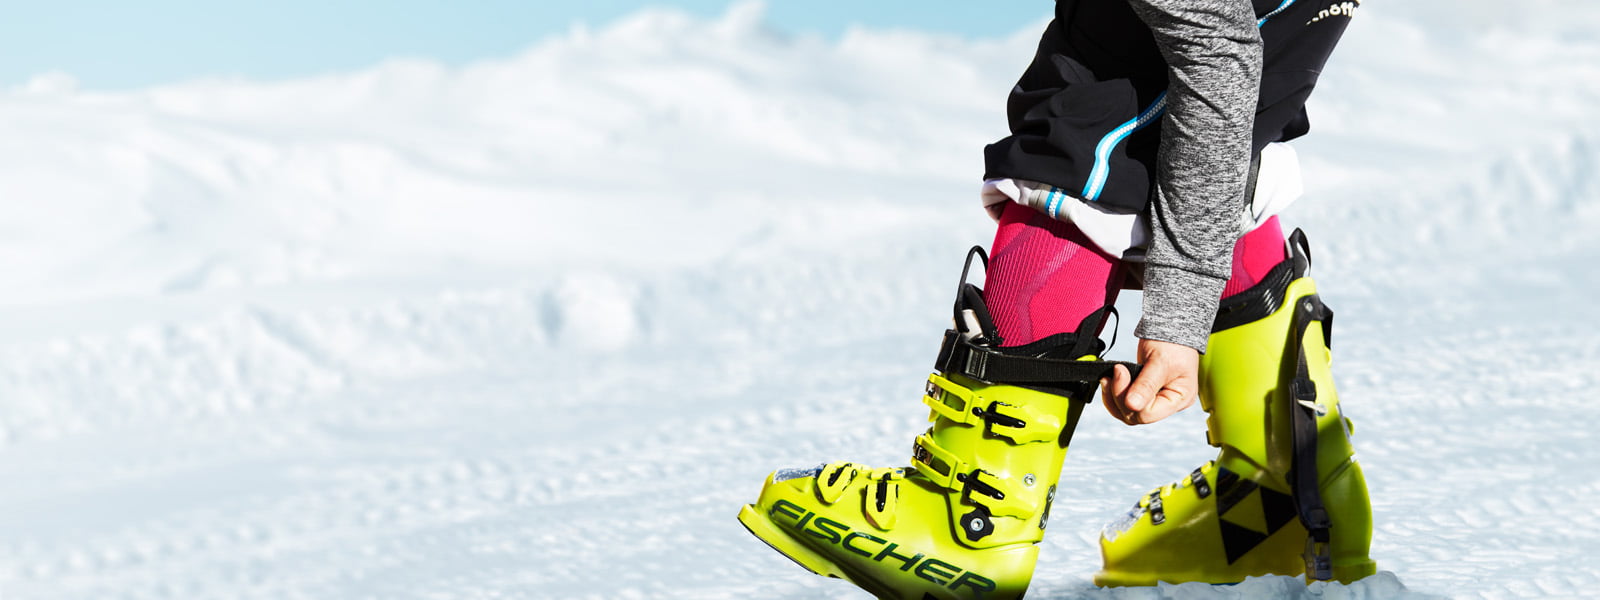 Skiërs met roze ski -sokken en grijze mouwen trekken de riem stevig op de achtergrond van zijn gele ski -laars op de achtergrond